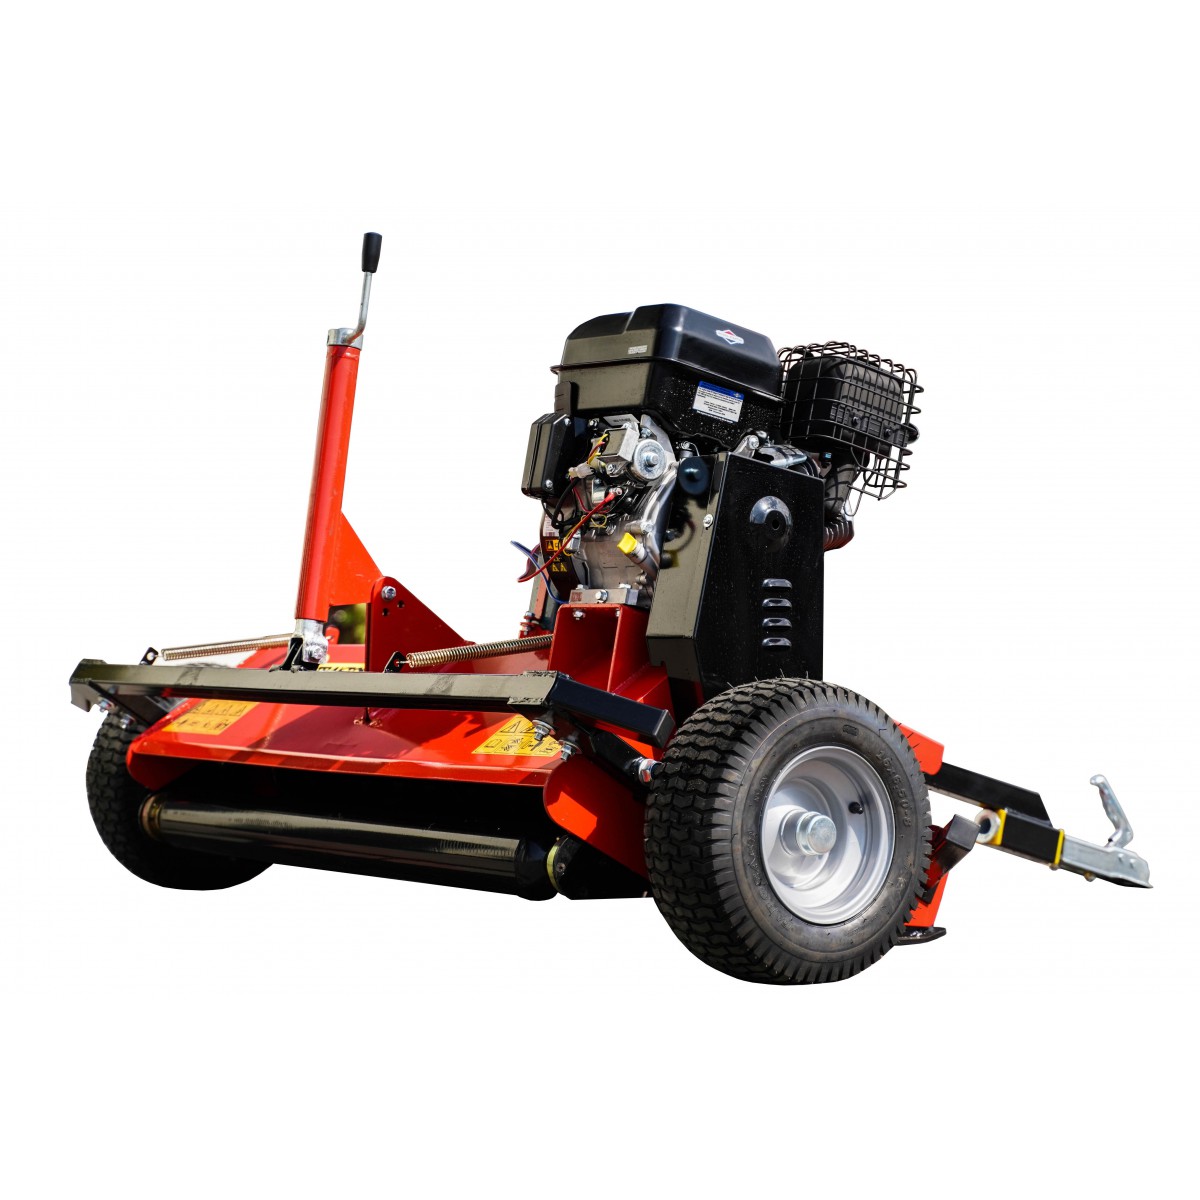 Flail mower ATVE 120, for ATV QUAD - Briggs&Stratton